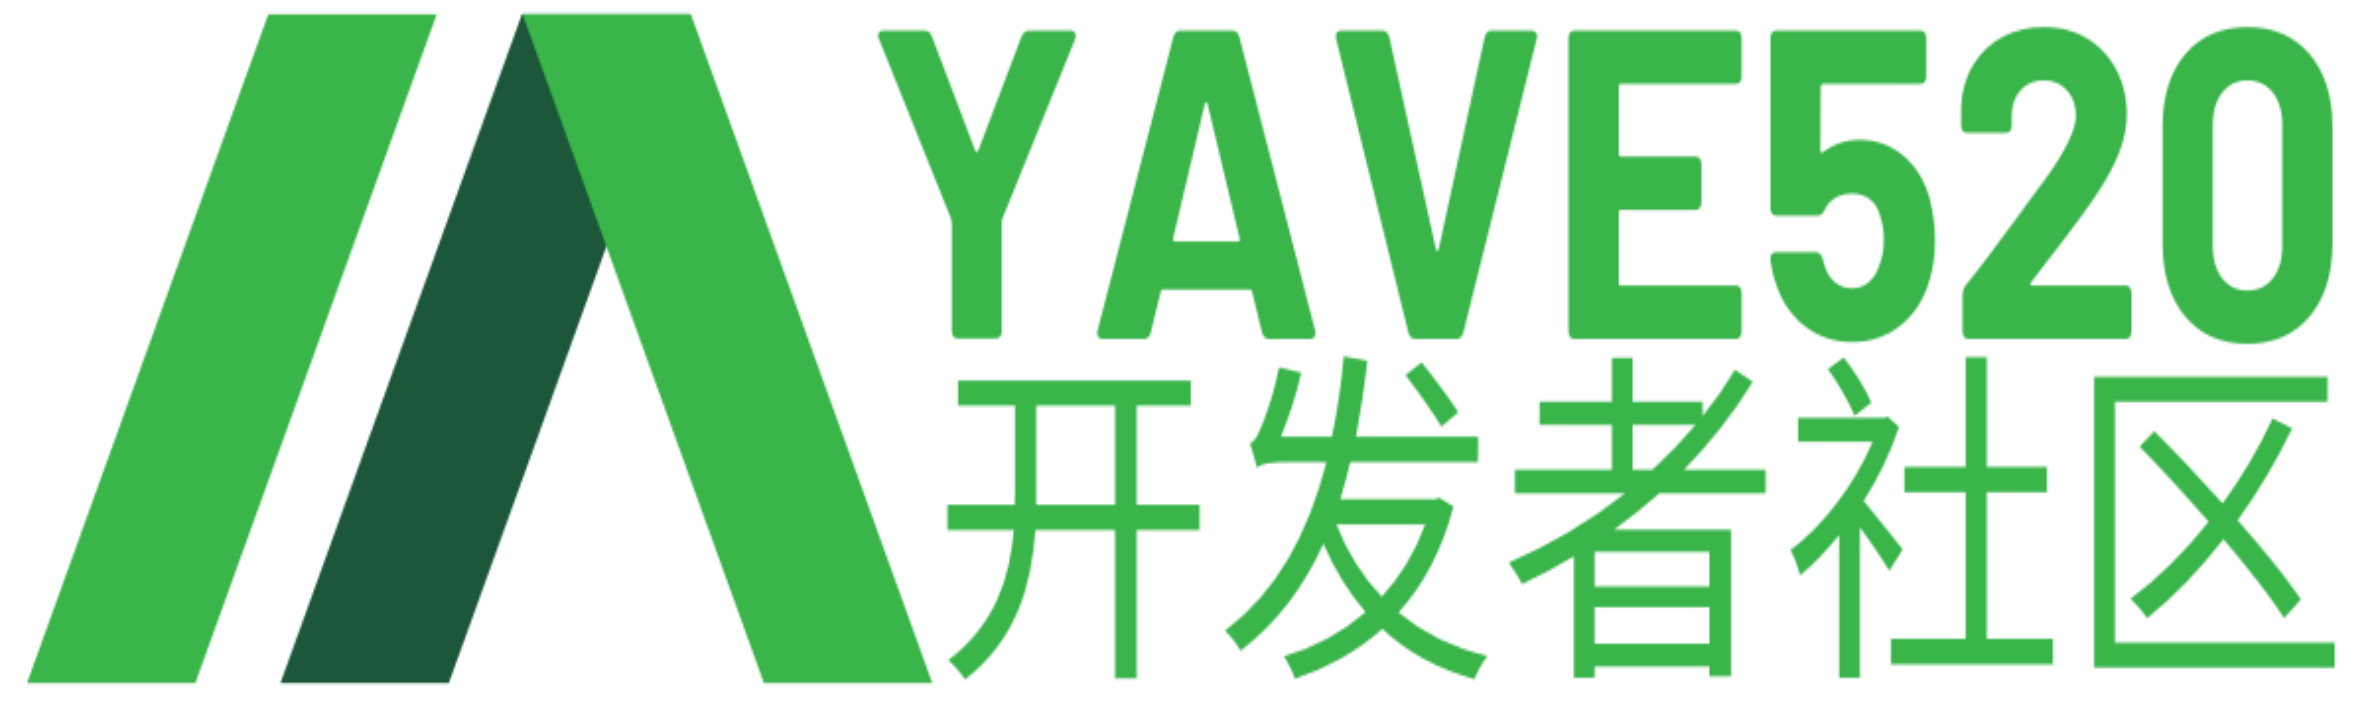 JavaScript基础-Yave520-专业开发者社区